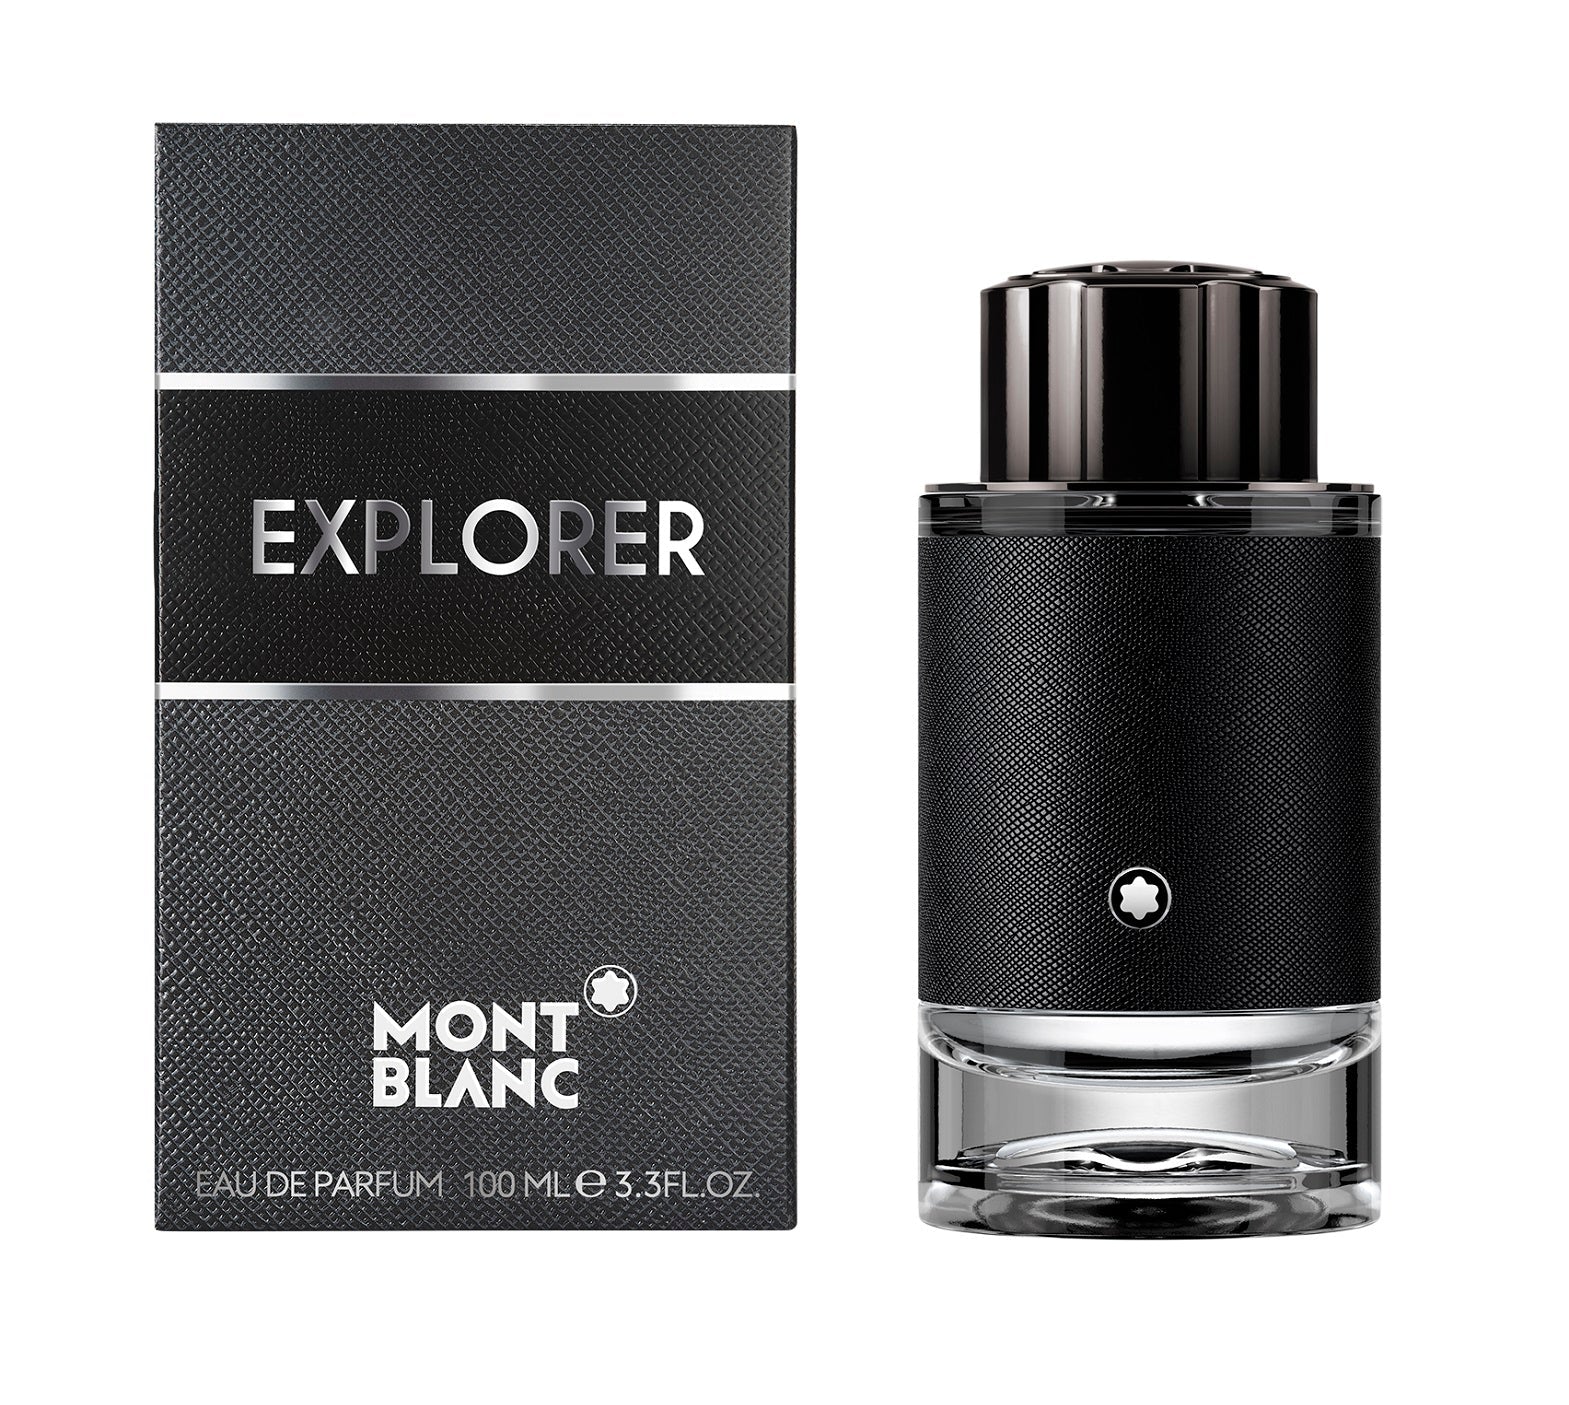 | Takreem EXPOLRER Perfume for Men | - #sho| Takreem EXPOLRER Perfume for Men |p_name#| Takreem EXPOLRER Perfume for Men |PerfumeMont BlancTakreem.joEXPOLRERMenEDP100ml| Takreem EXPOLRER Perfume for Men